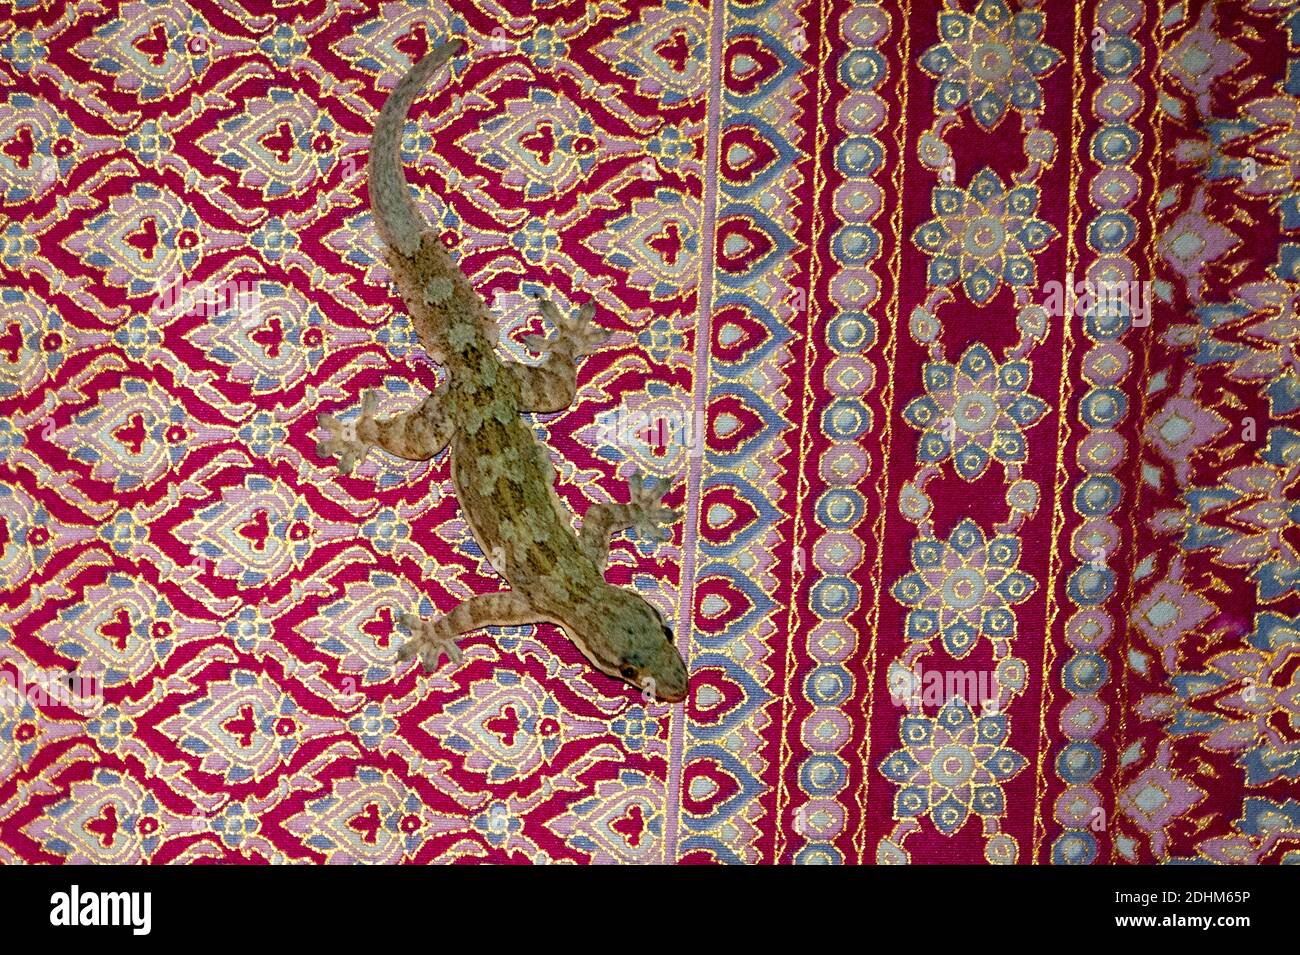 Casa común gecko (Hemidactylus frenatus) sentado en una alfombra de colores en una casa de campo en Sepilko, Sabah, Borneo. Foto de stock